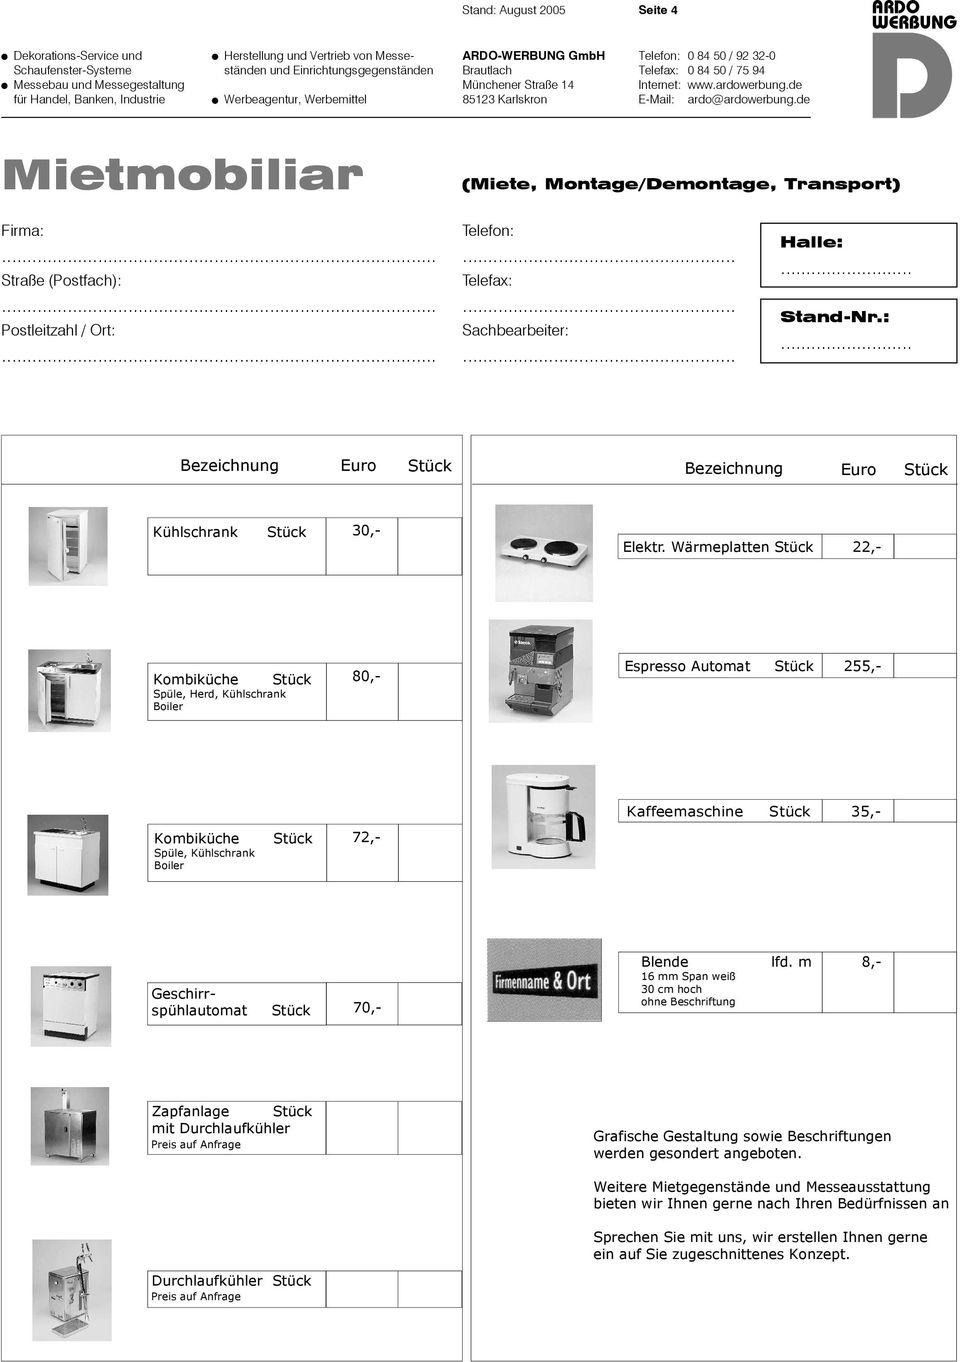 72,- Geschirrspühlautomat 70,- Blende 16 mm Span weiß 30 cm hoch ohne Beschriftung lfd.